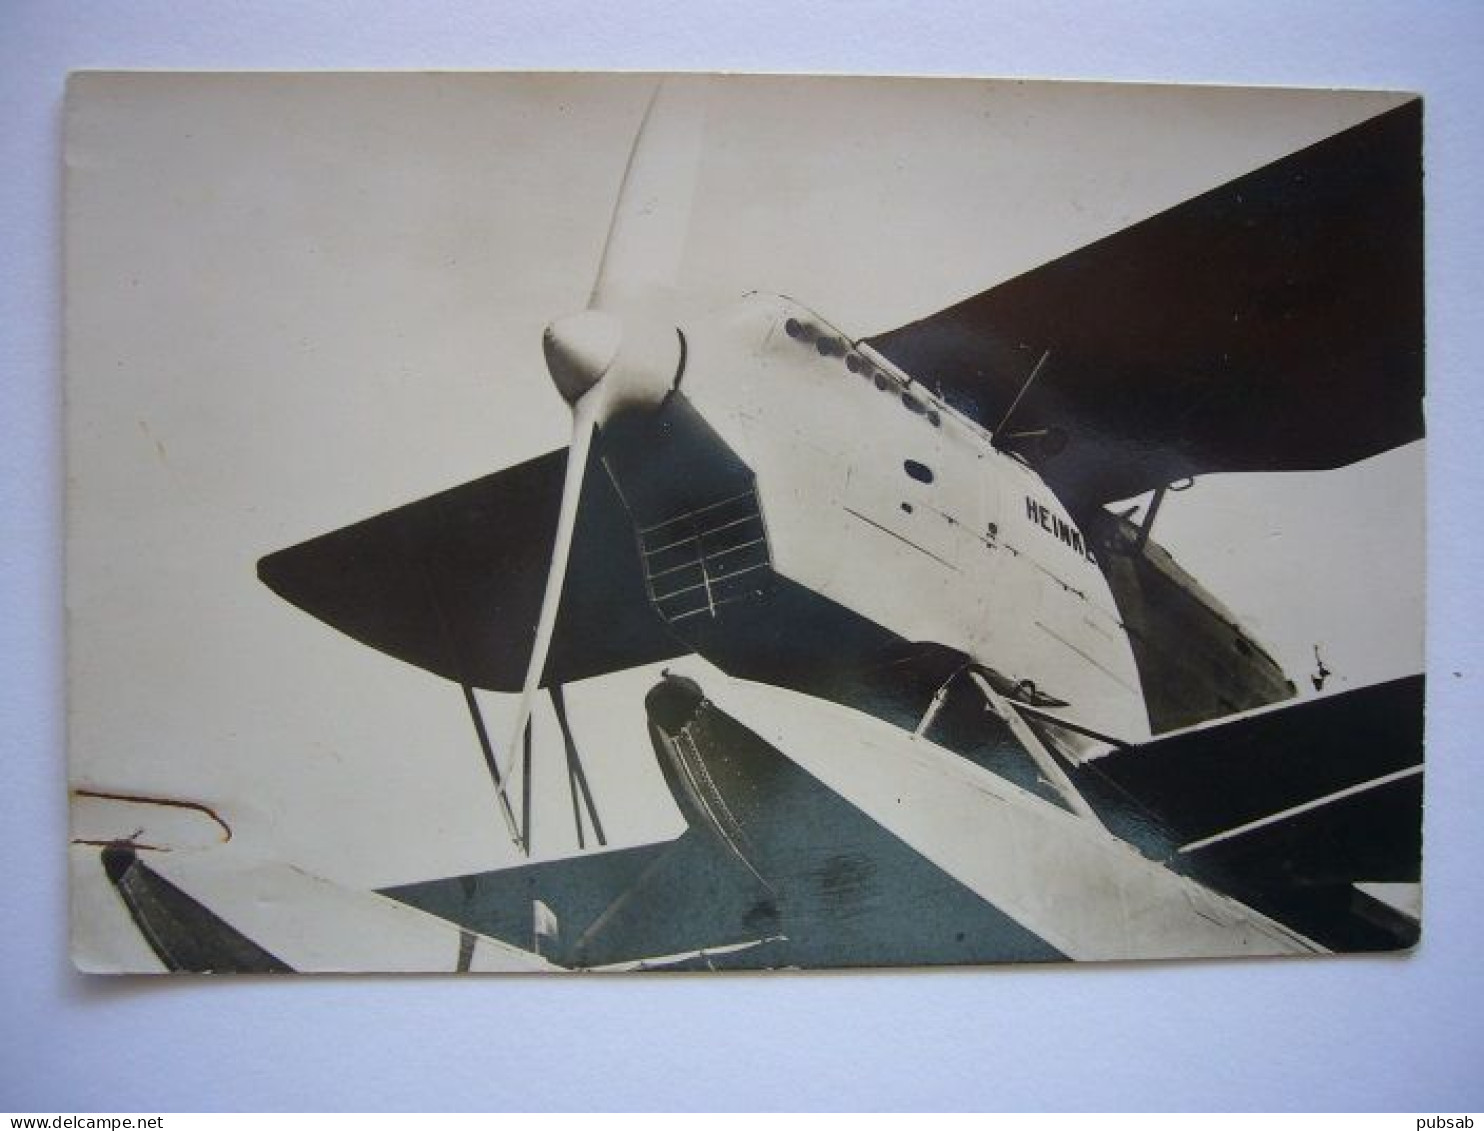 Avion / Airplane / DEUTSCHE LUFTWAFFE / Seaplane / Heinkel He 60 - 1939-1945: 2nd War